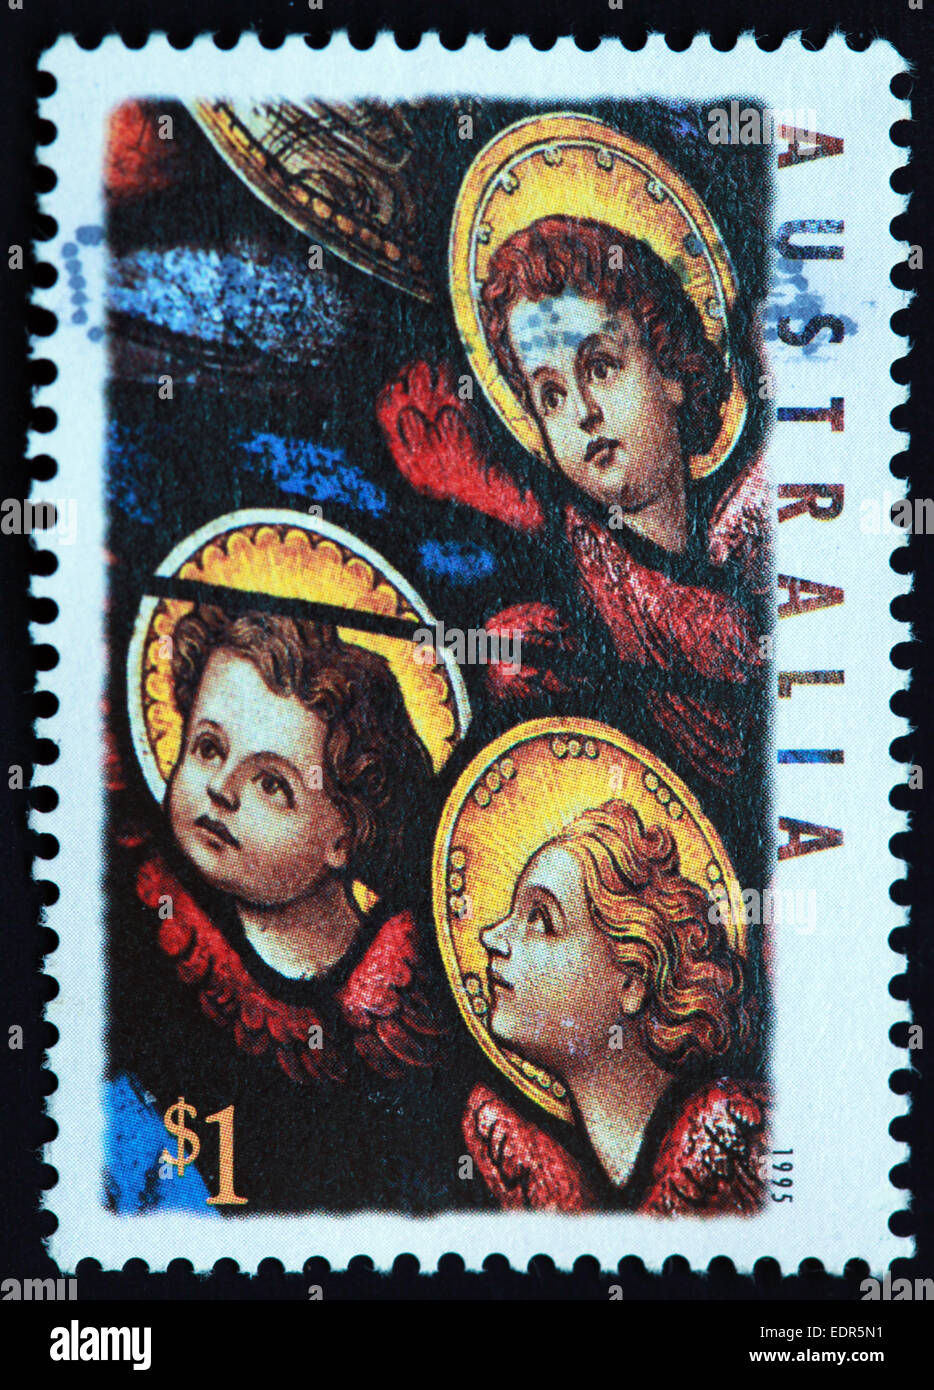 Utilisé et oblitérée Australie / Austrailian Stamp 1995 xmas $1 Banque D'Images